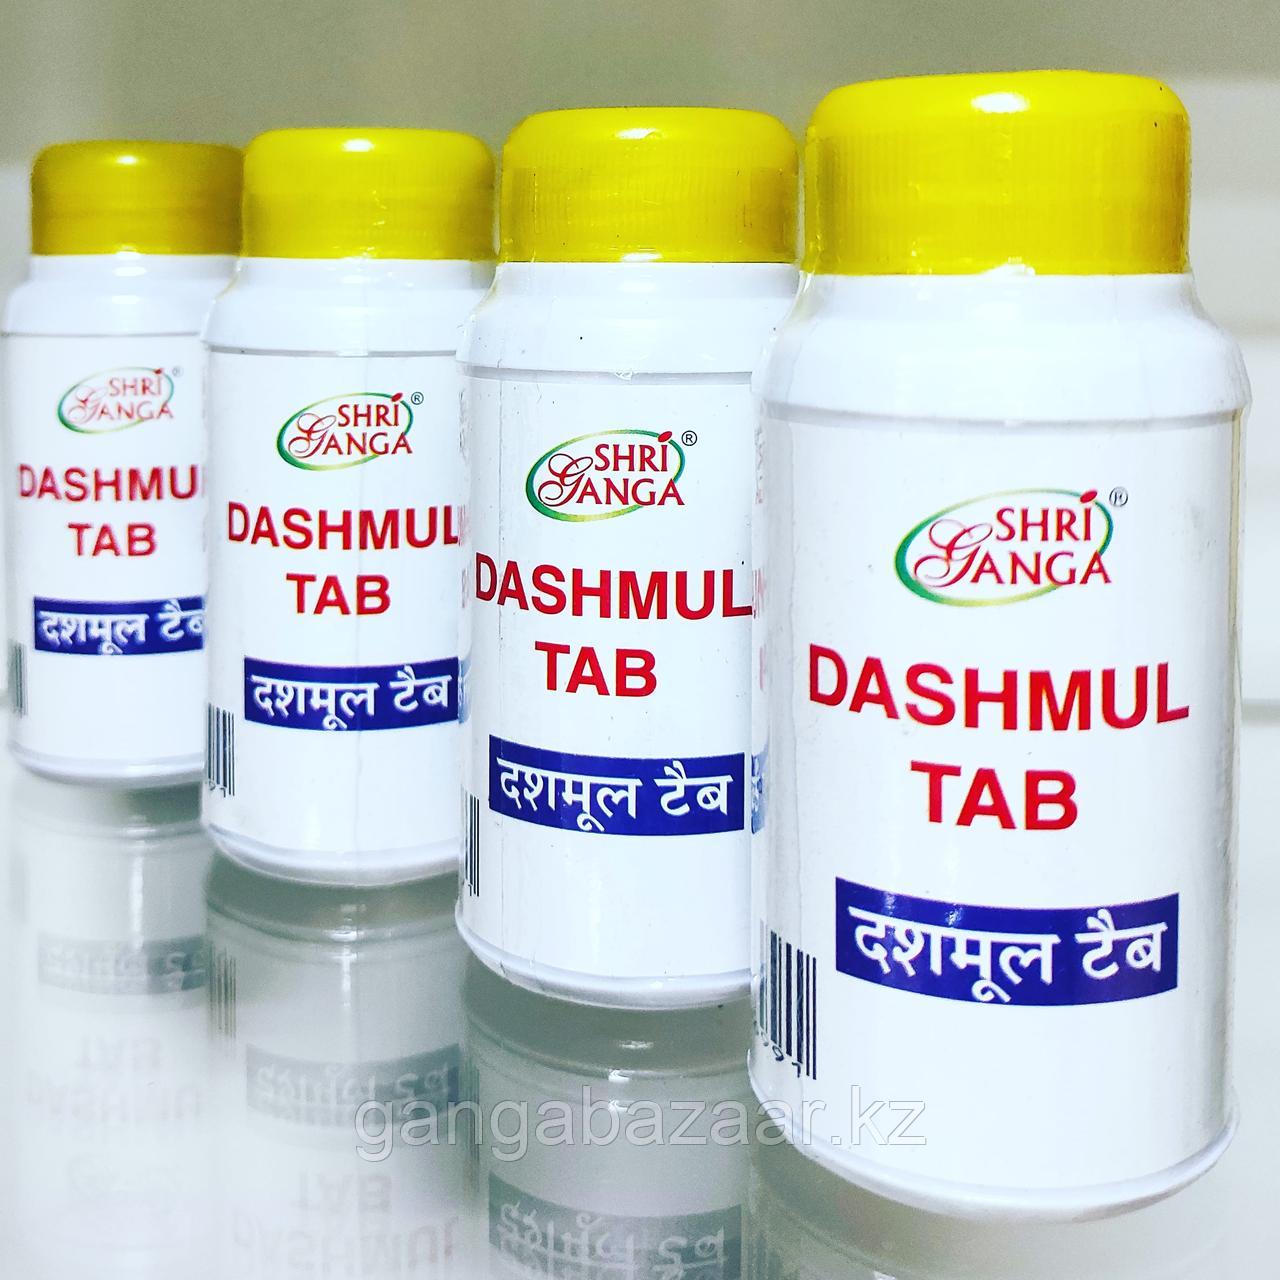 Дашмул Дашмул Шри Ганга очищение организма, оздоровление 100 таб